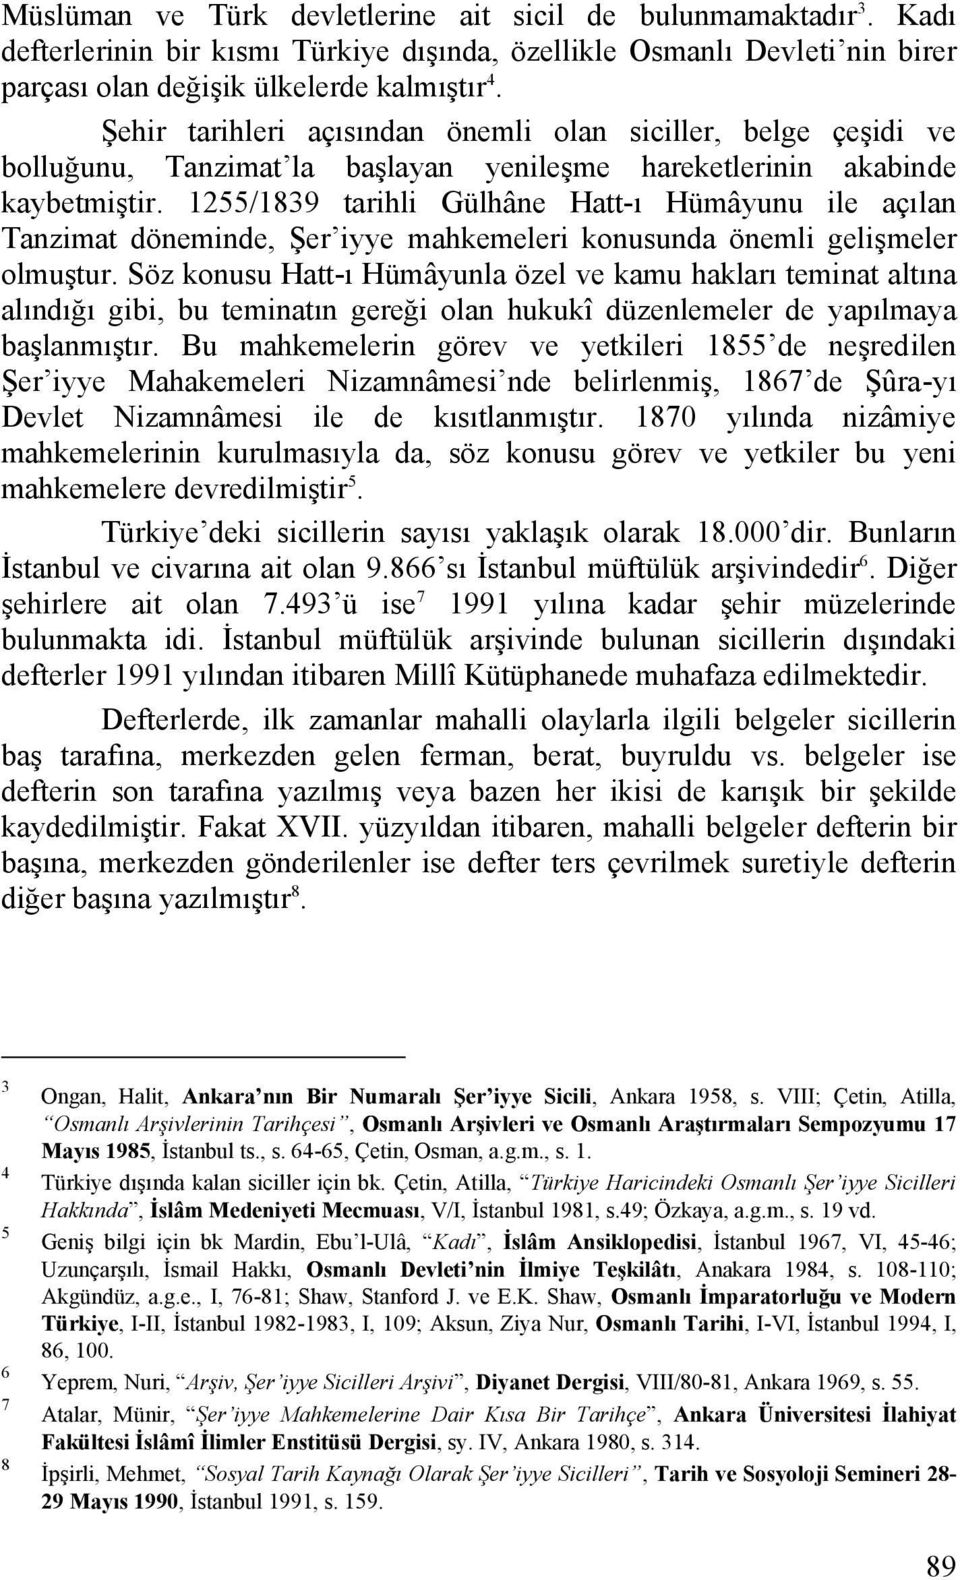 1255/1839 tarihli Gülhâne Hatt-ı Hümâyunu ile açılan Tanzimat döneminde, Şer iyye mahkemeleri konusunda önemli gelişmeler olmuştur.